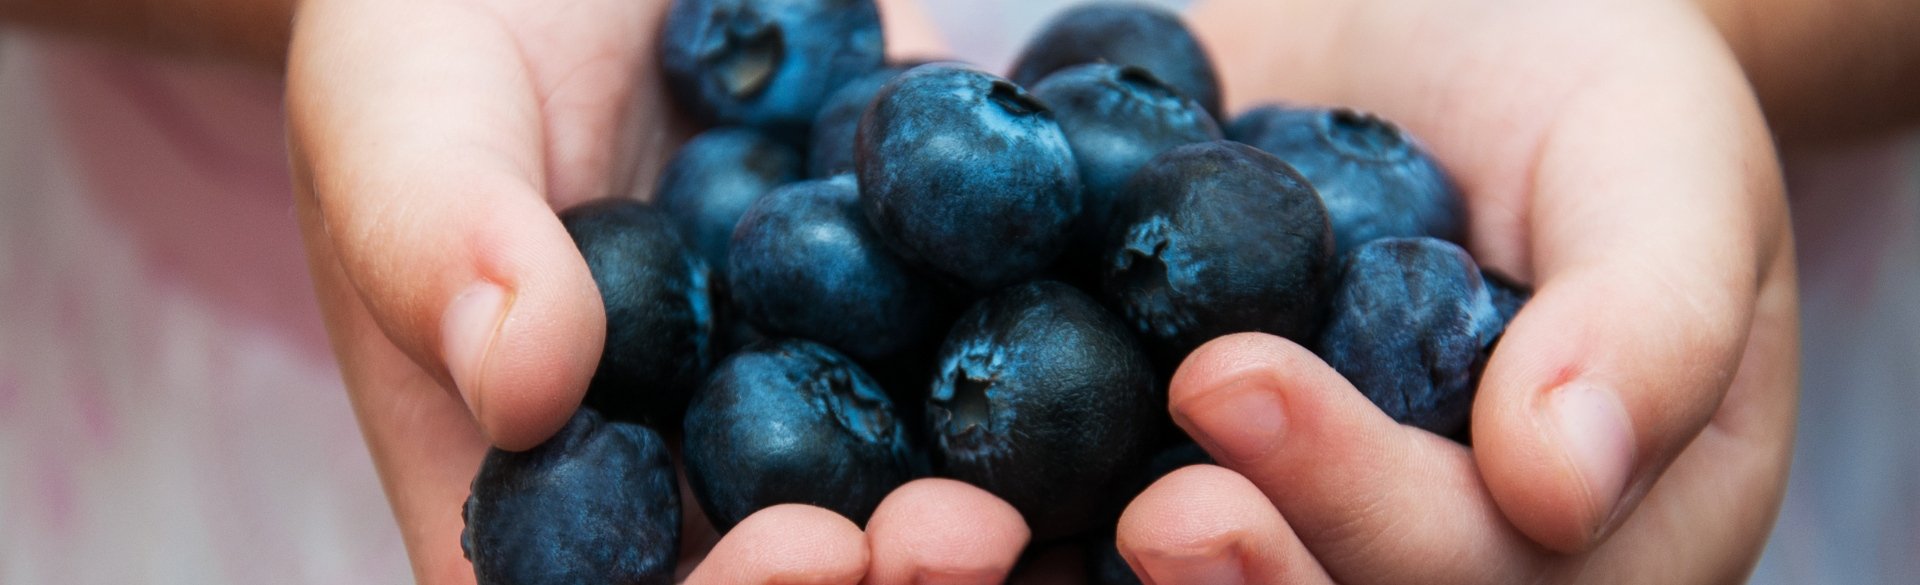 Kid holding blueberries